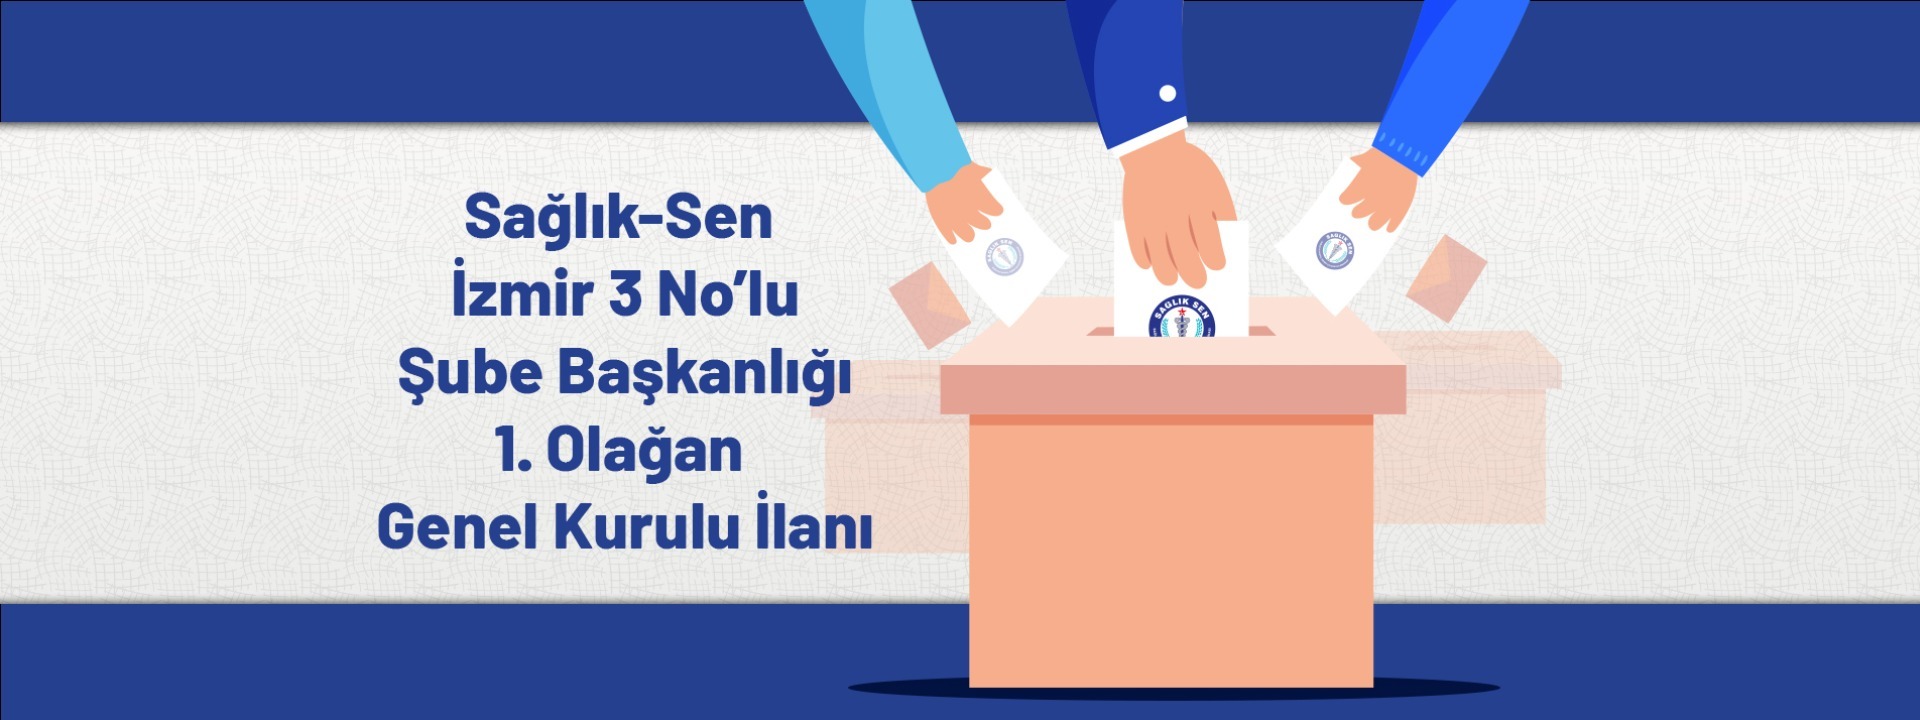 Sağlık-Sen İzmir 3 No'lu Şube Başkanlığı 1. Olağan Genel Kurul İlanı